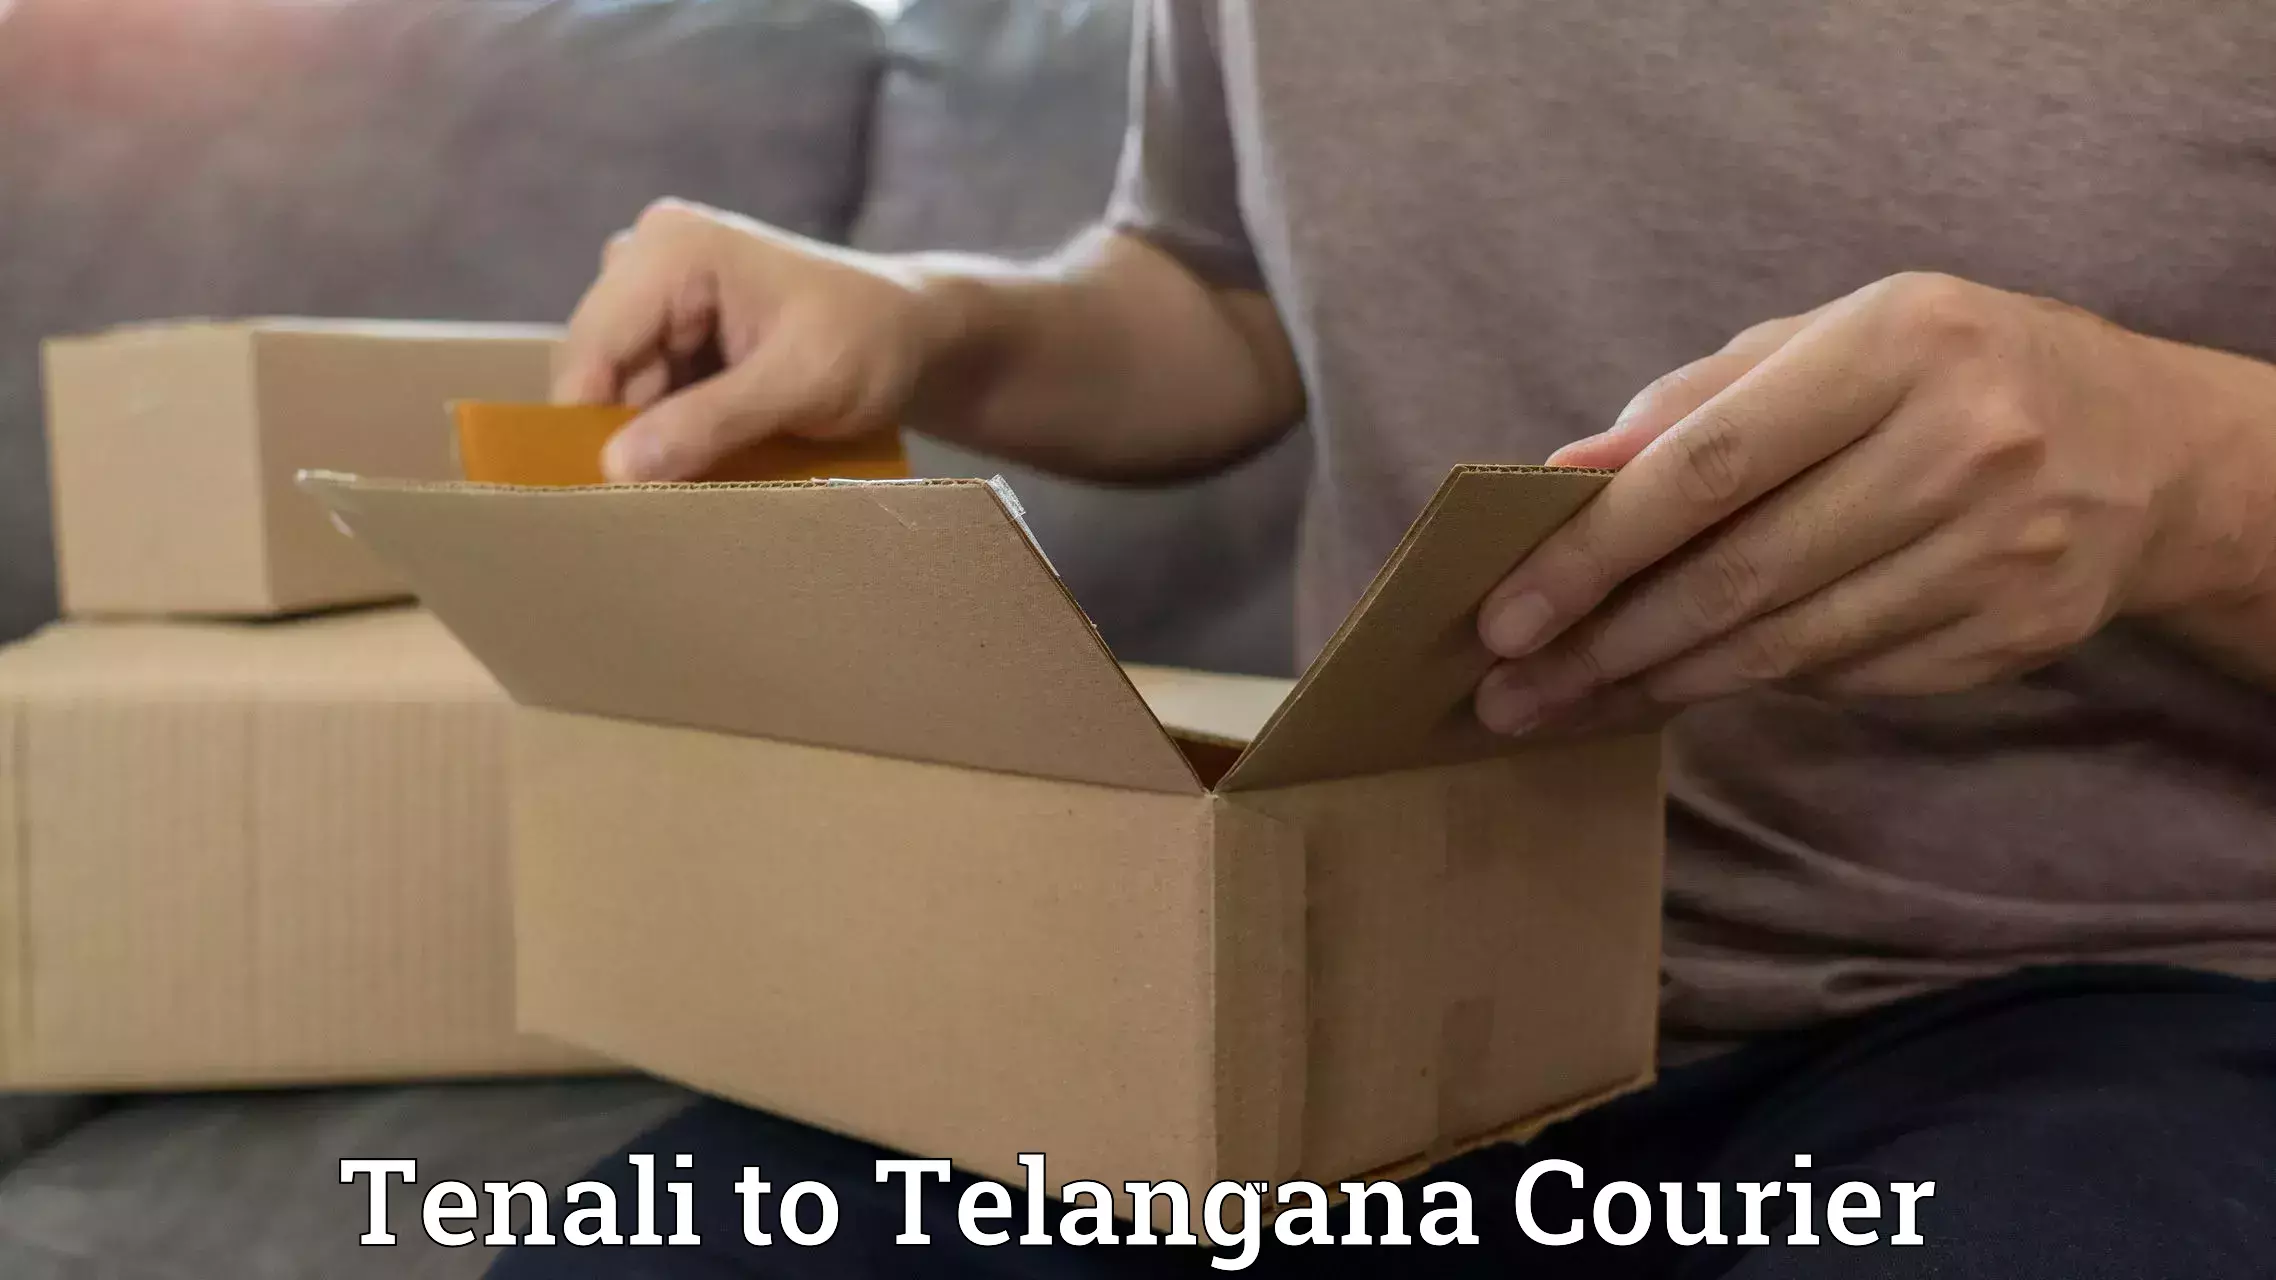 Retail shipping solutions Tenali to Telangana